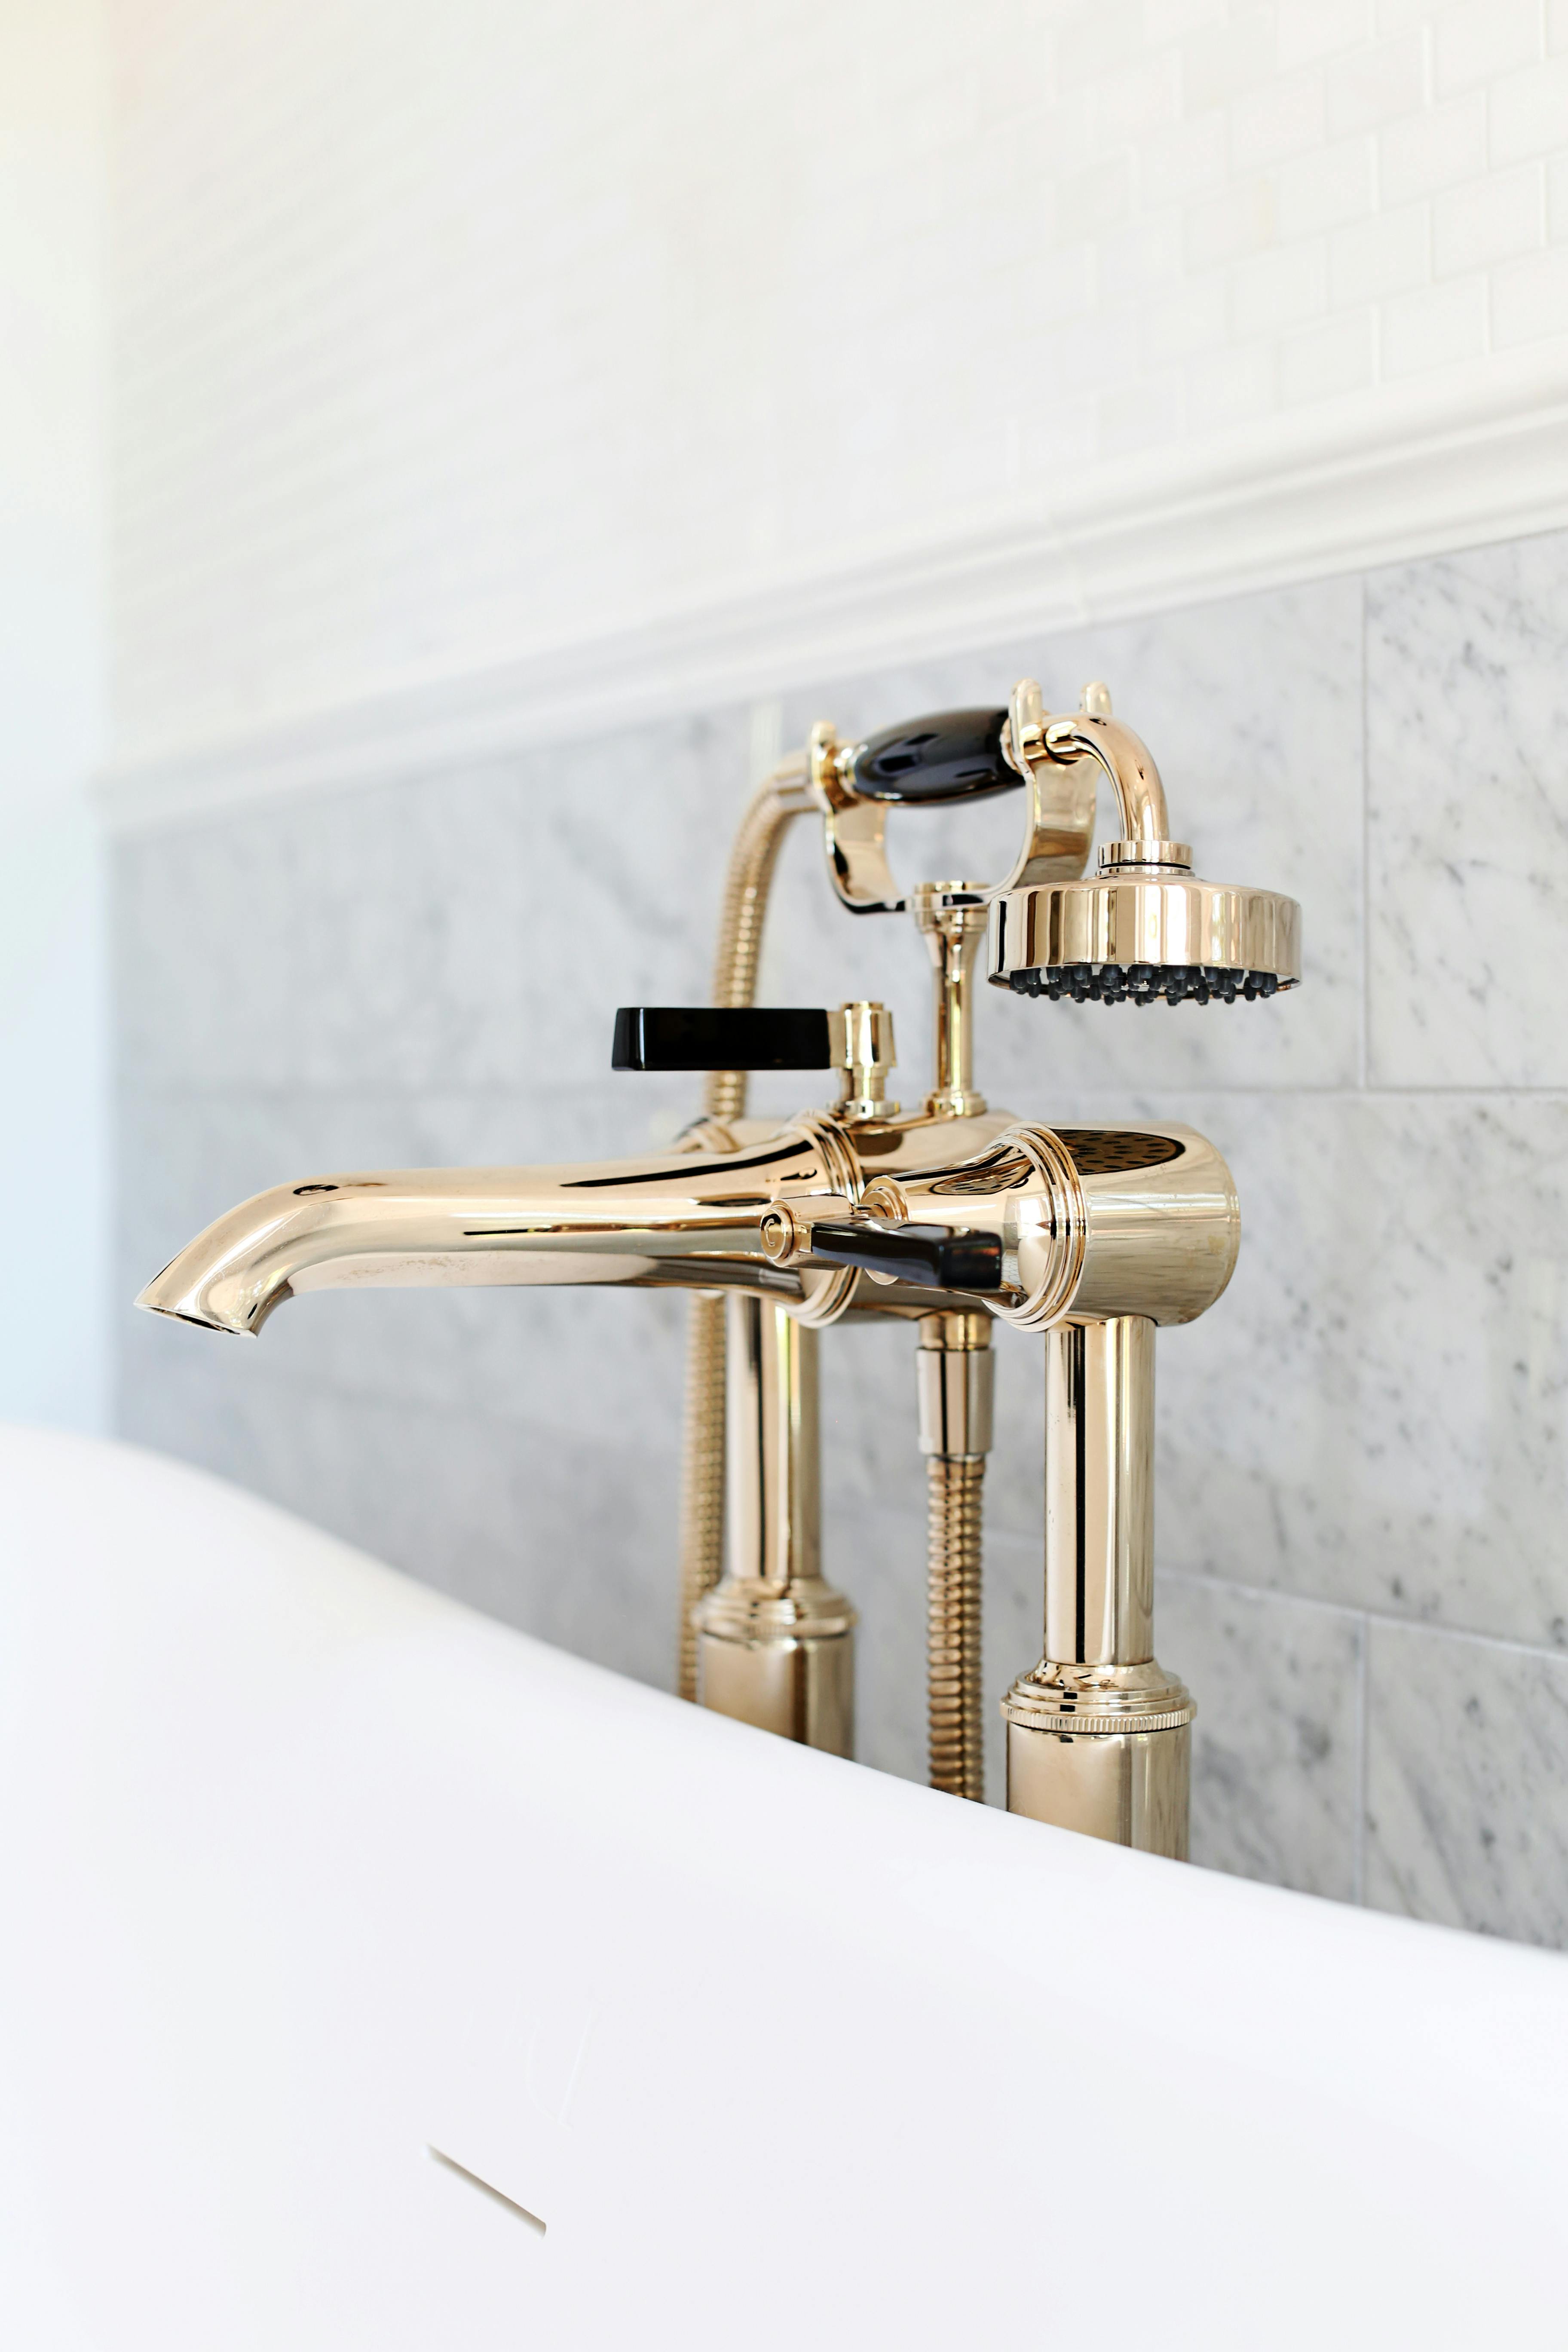 Antique Gold luxury Art Deco taps beside a bathtub